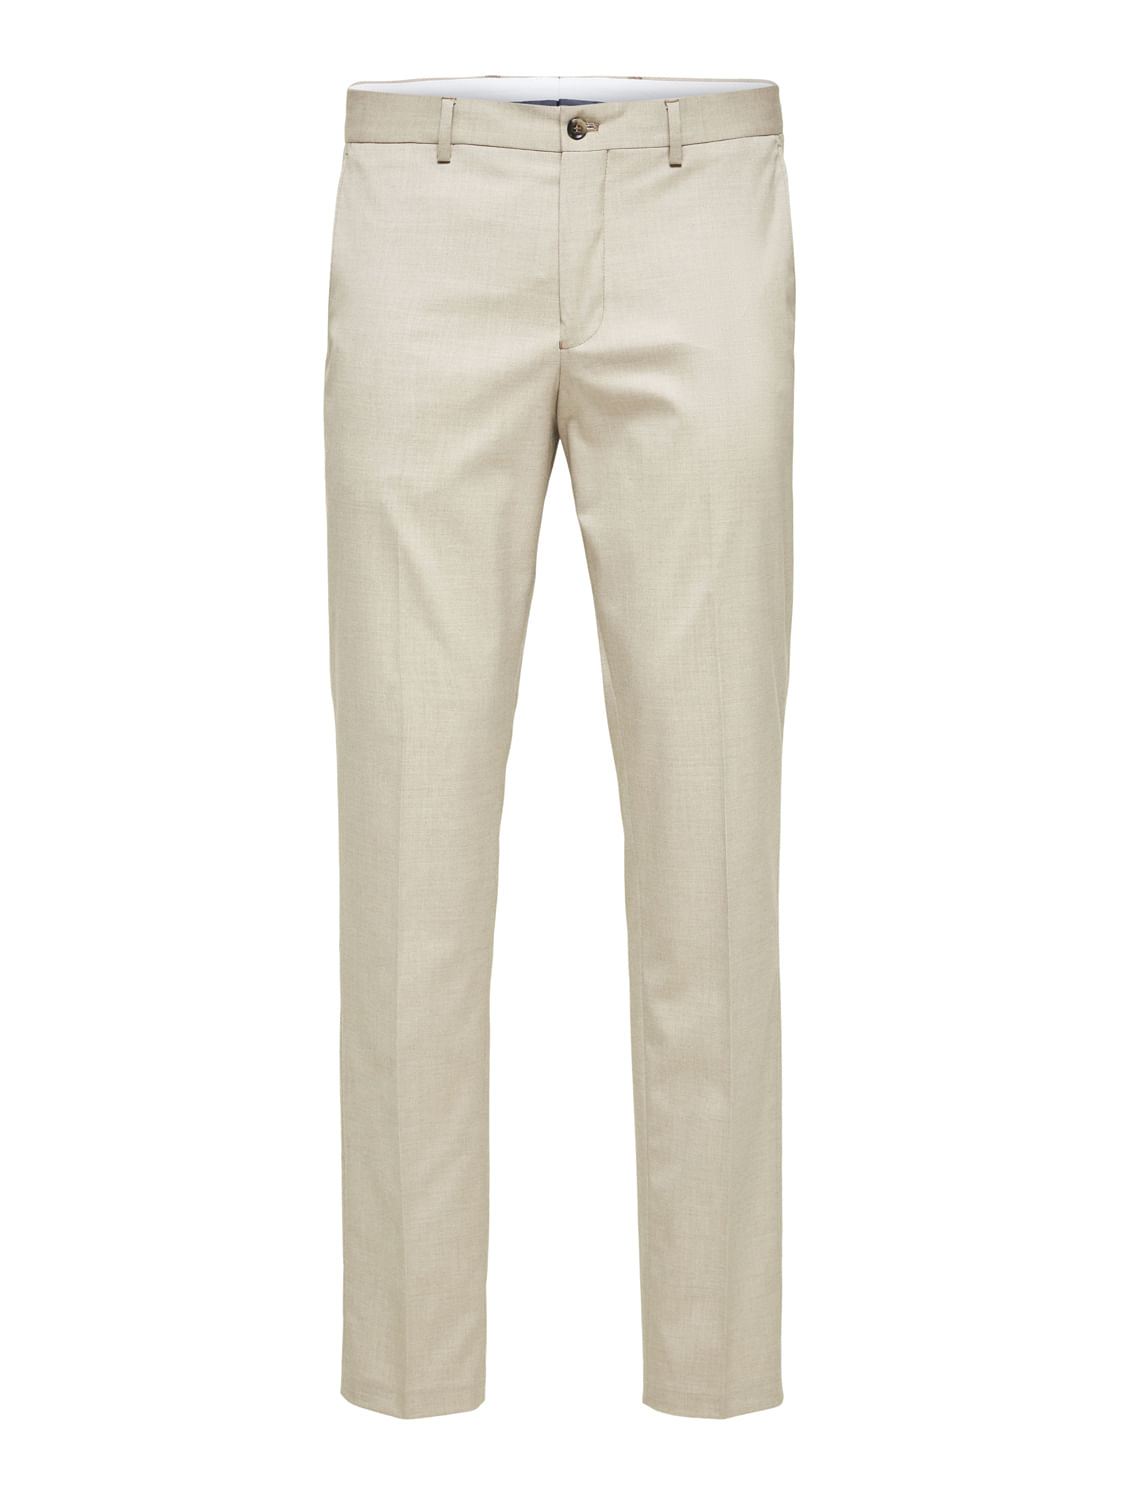 Regular Fit Plain Mens Grey Formal Cotton Trouser, Handwash at Rs 330 in  Gurugram